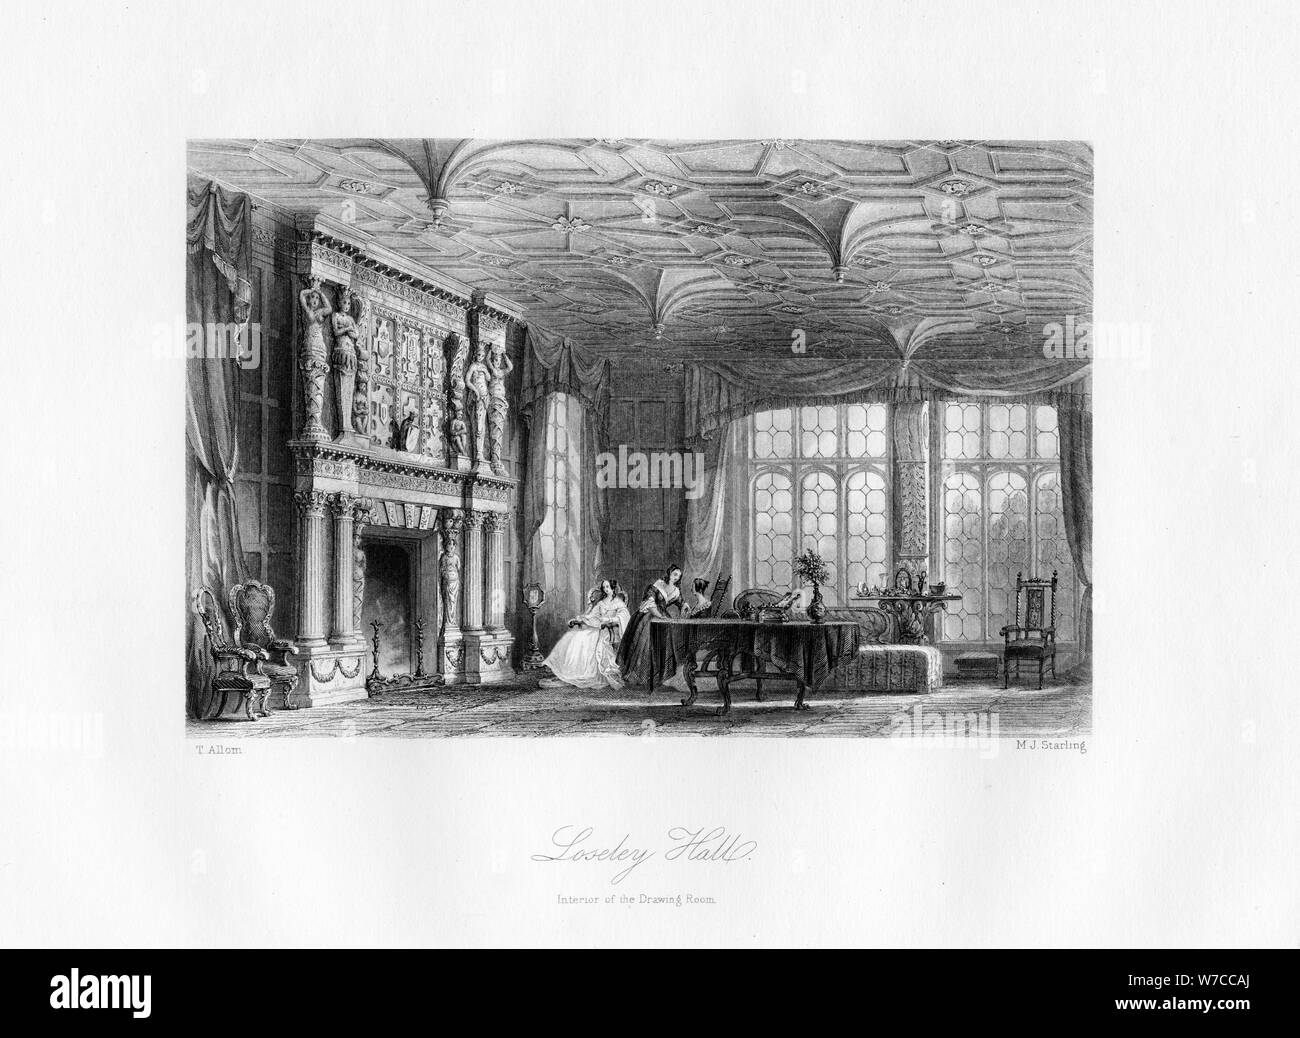 El salón, salón de Loseley, Guildford, siglo xix.Artista: MJ Starling Foto de stock